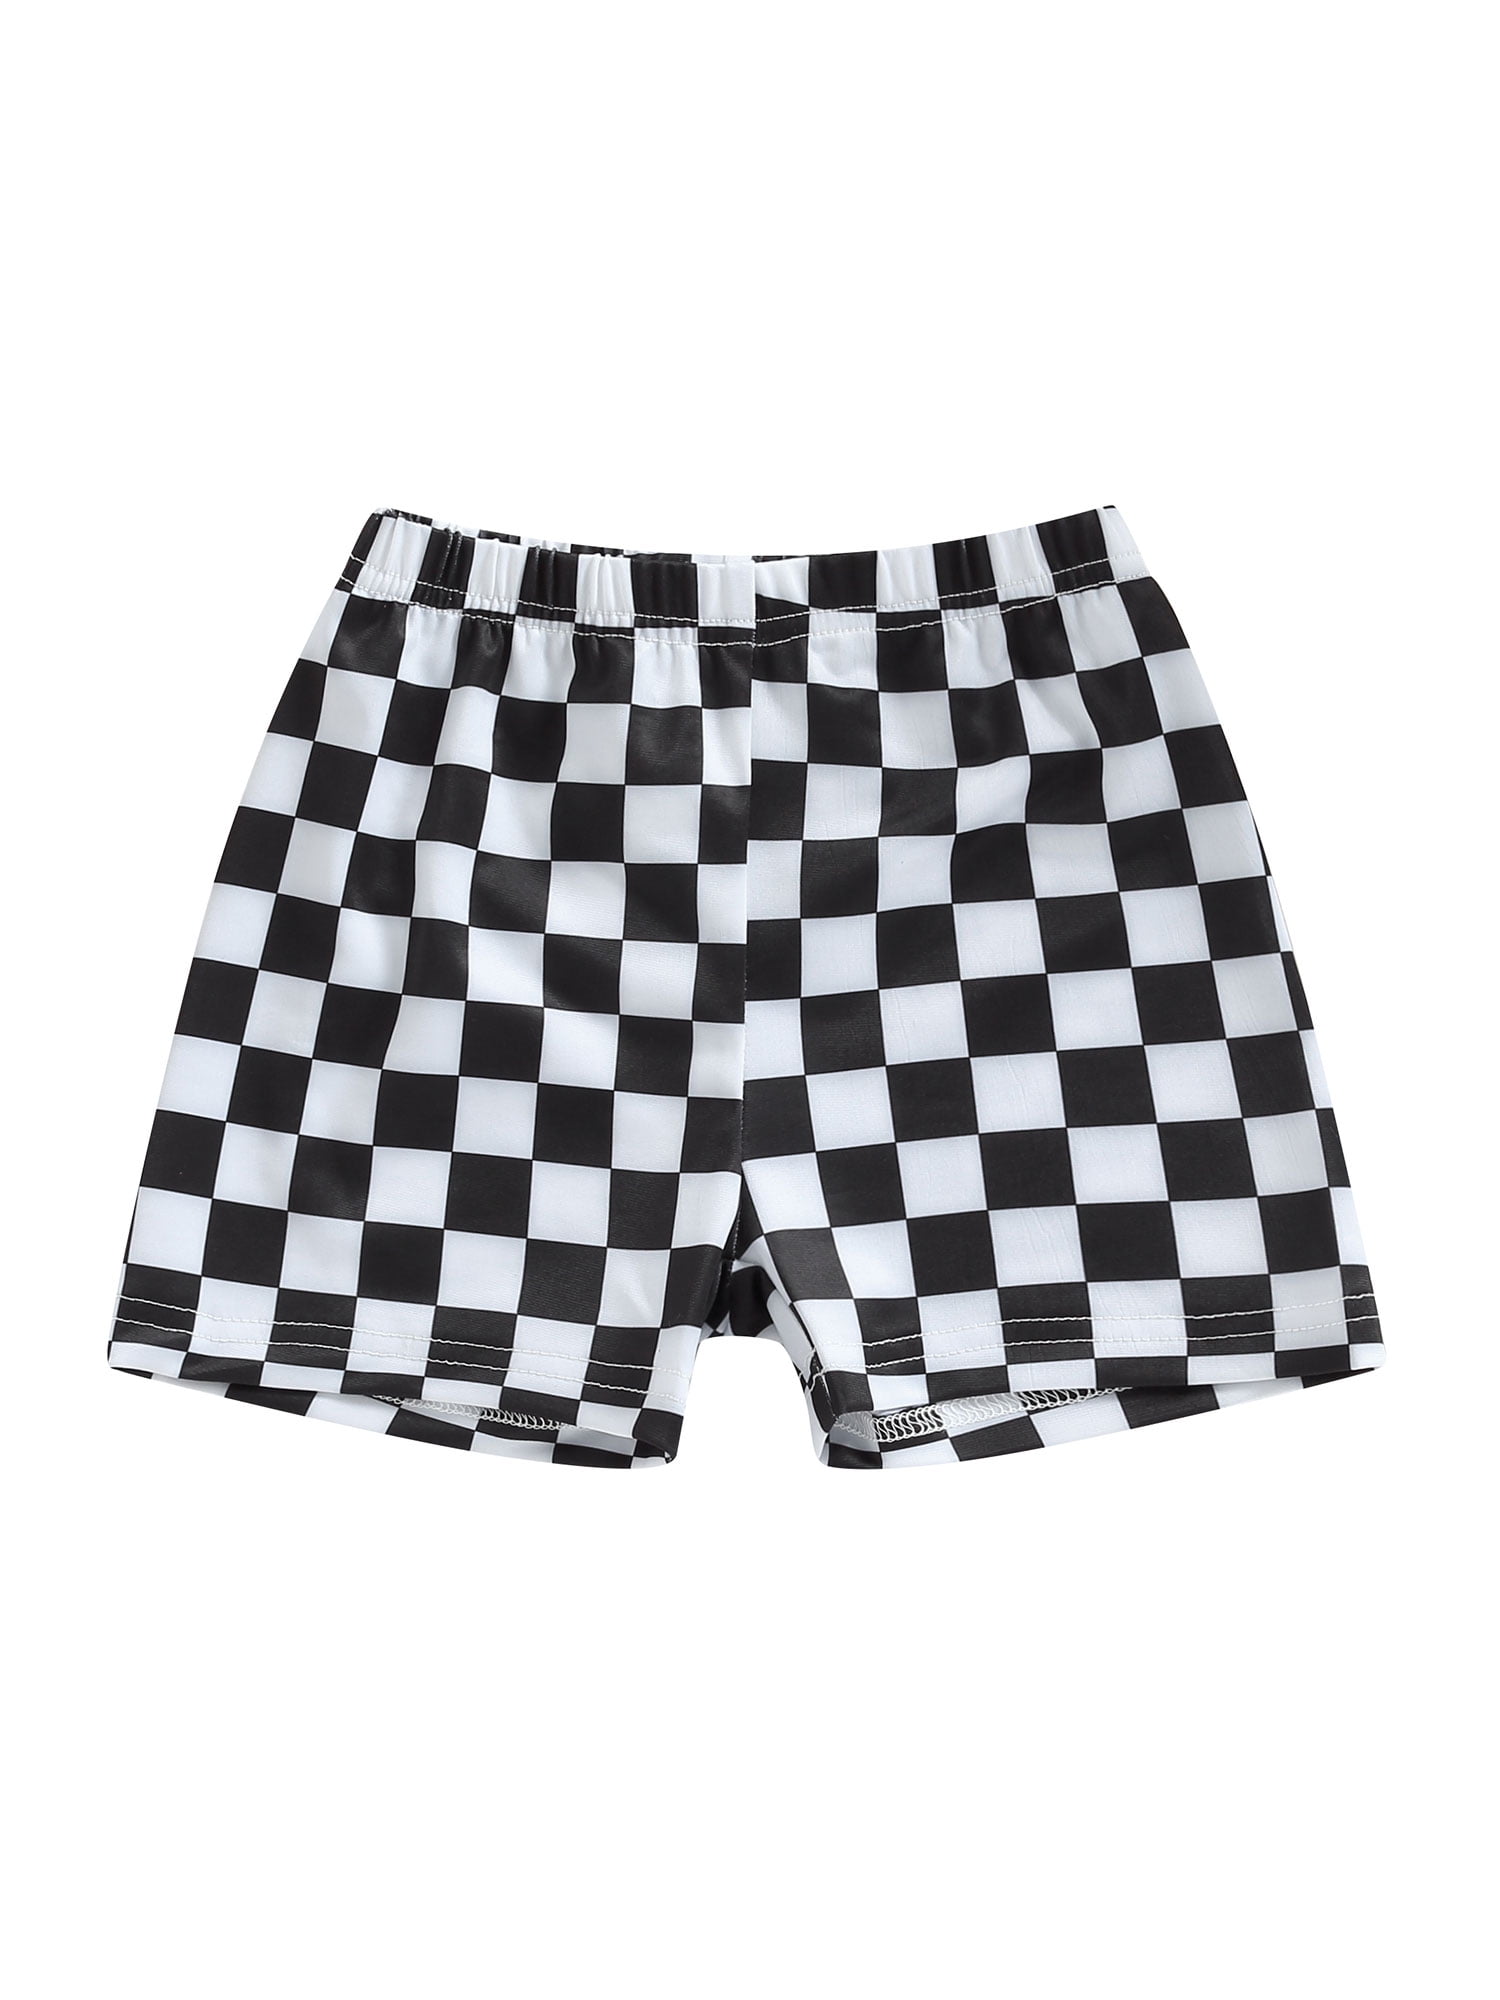 Binwwede Boys Swim Trunks, Checkerboard Print Fast Dry Summer Sports ...